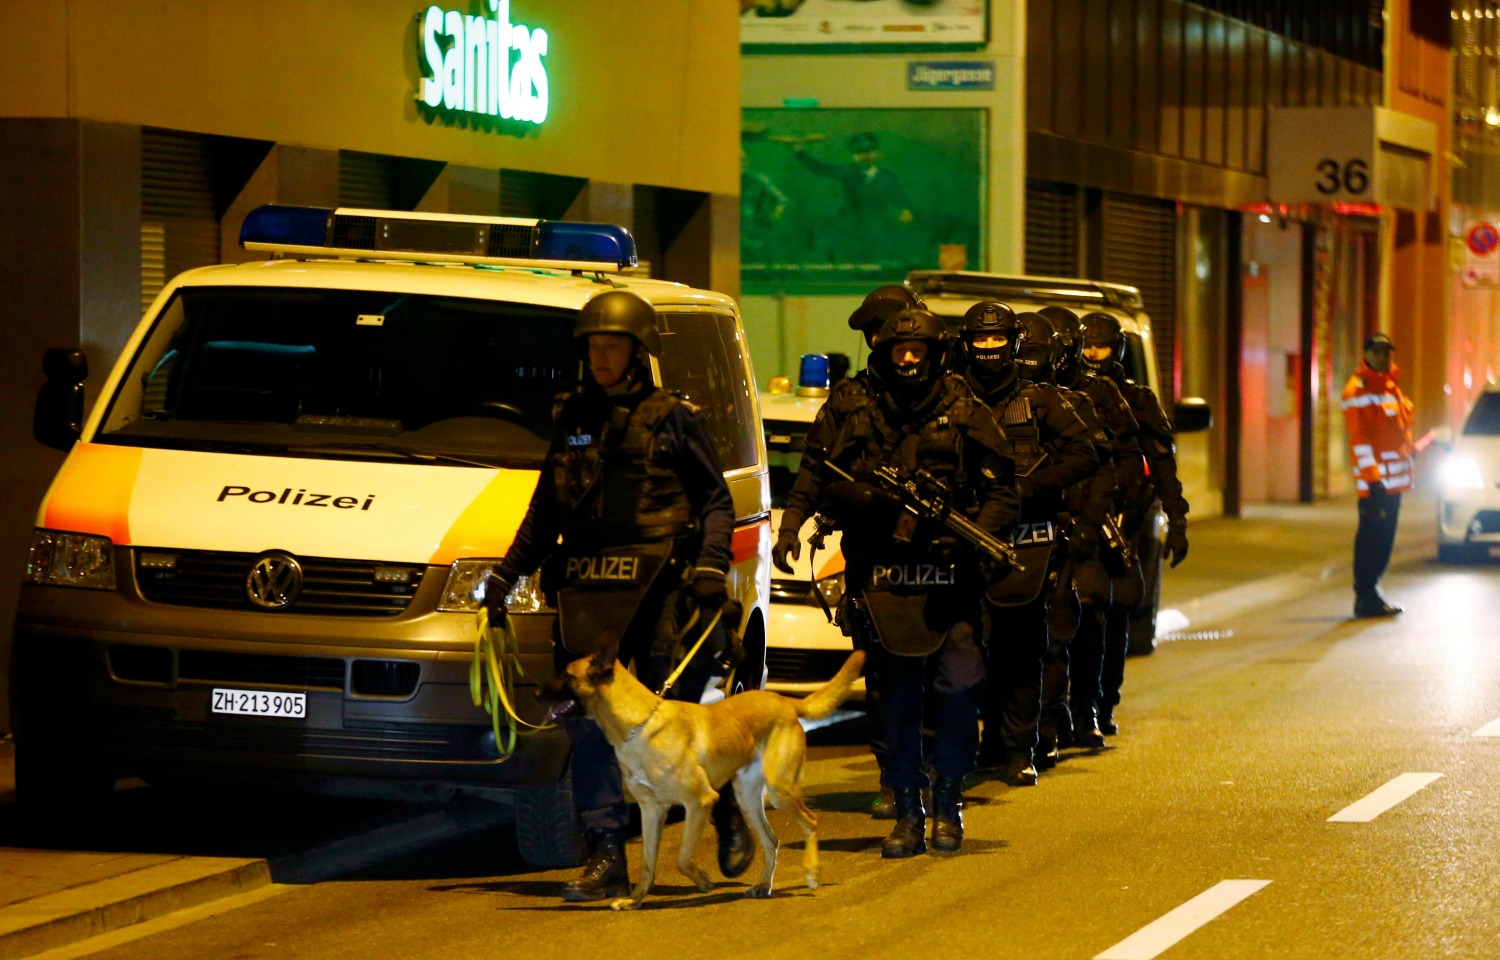 El atacante de Zurich era suizo y sin vínculos islamistas